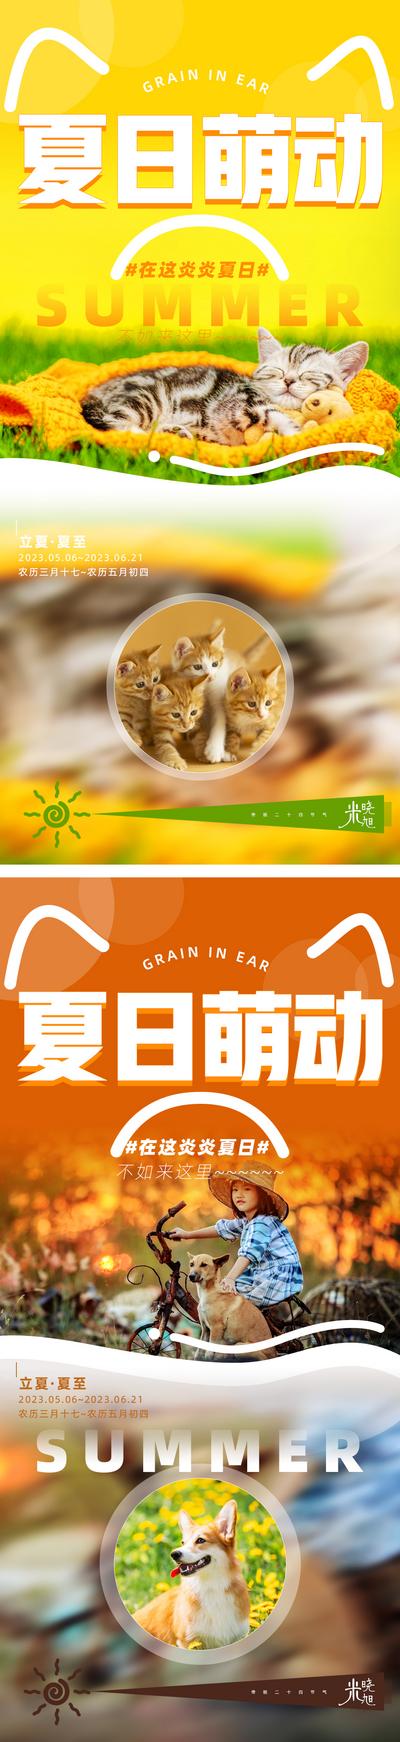 【南门网】广告 海报 系列 动物 猫 狗 夏季